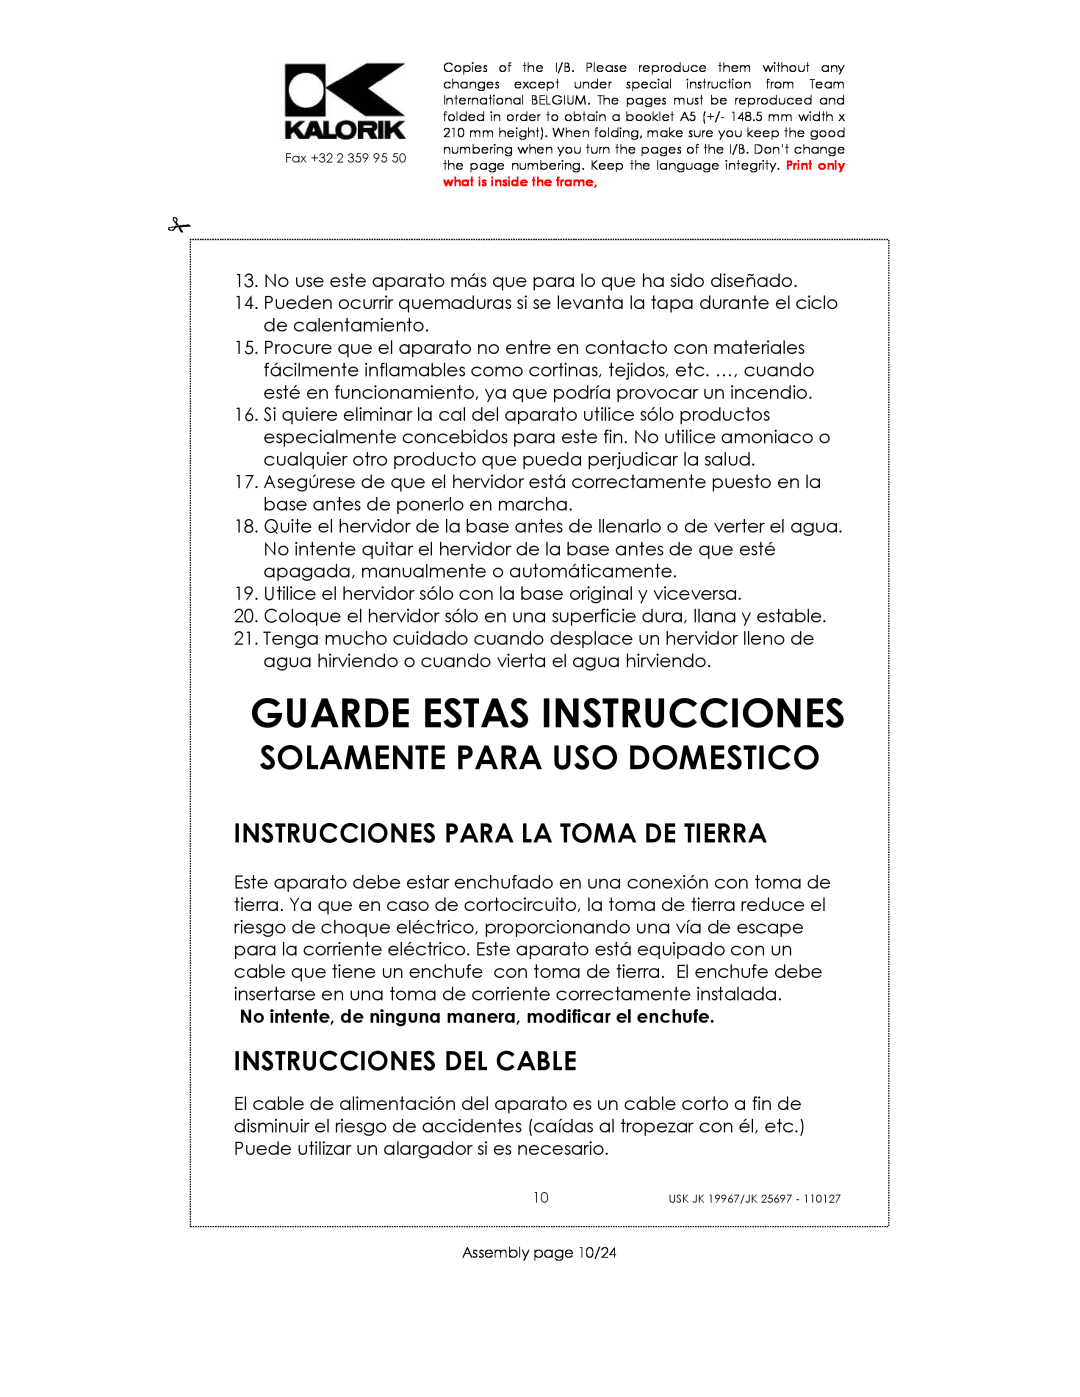 Kalorik JK 19967, JK 25697 manual Guarde Estas Instrucciones, Instrucciones Para La Toma De Tierra, Instrucciones Del Cable 